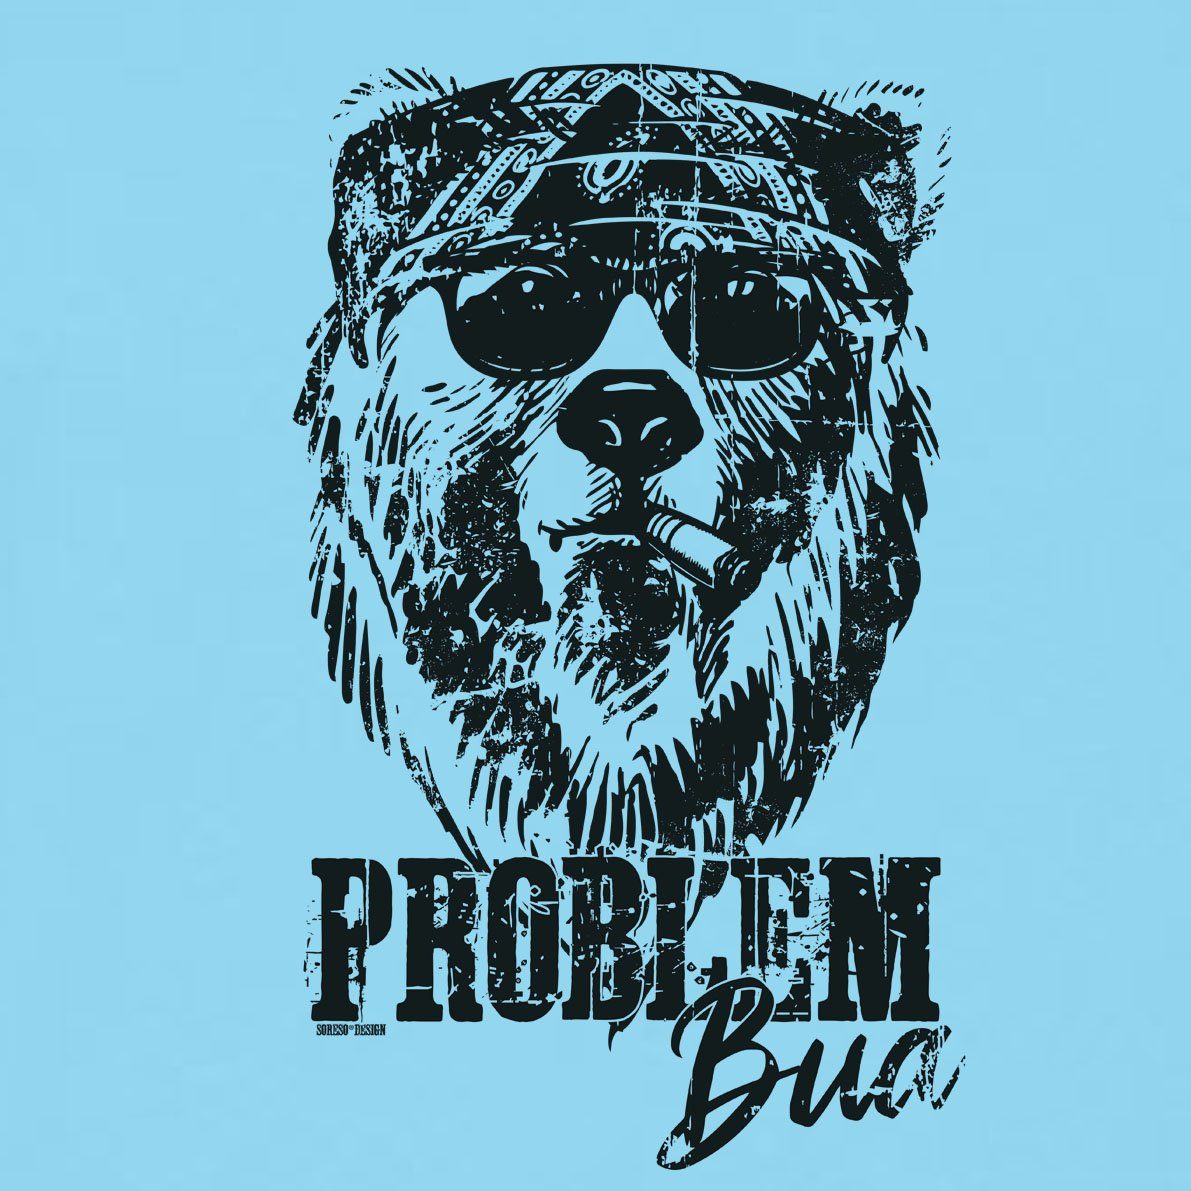 T-Shirt Soreso® Herren Problem Trachten (Ein Männer Bua Trachtenshirt T-Shirt T-Shirt) hellblau